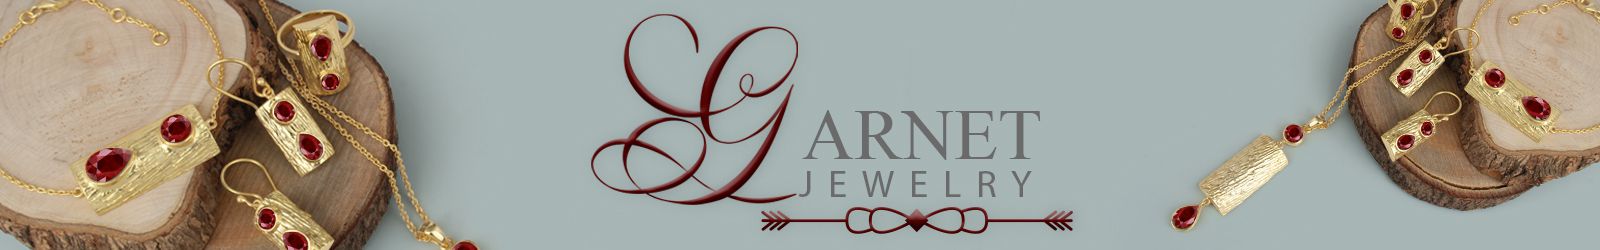 Silver Garnet Jewelry Wholesale Supplier